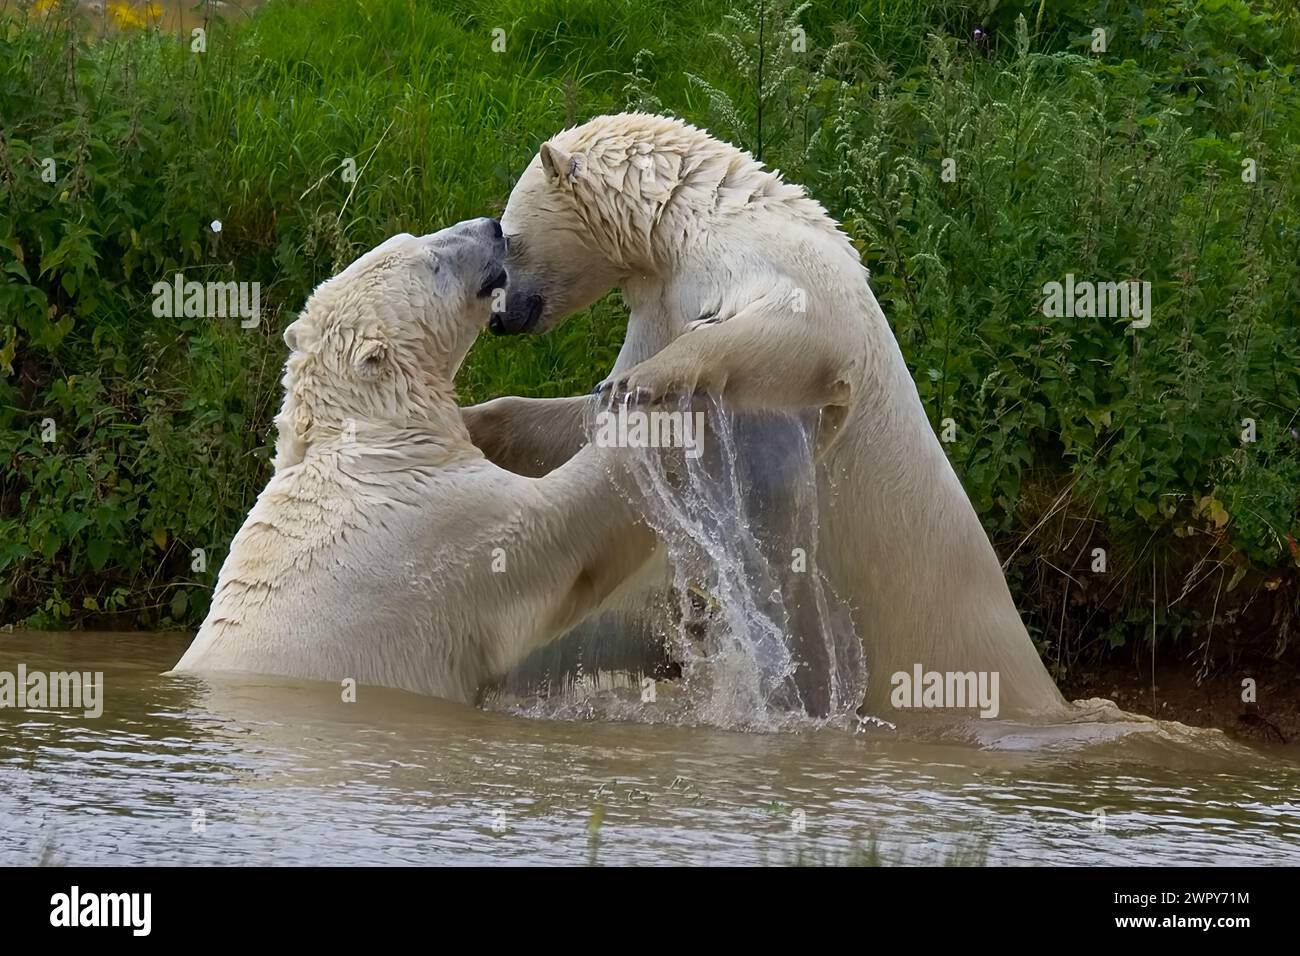 Zwei sehr große Eisbären mit dickem weißem Fell stehen in einem Pool und spielen Kämpfe, was große Spritzer im kühlen Wasser verursacht. Stockfoto